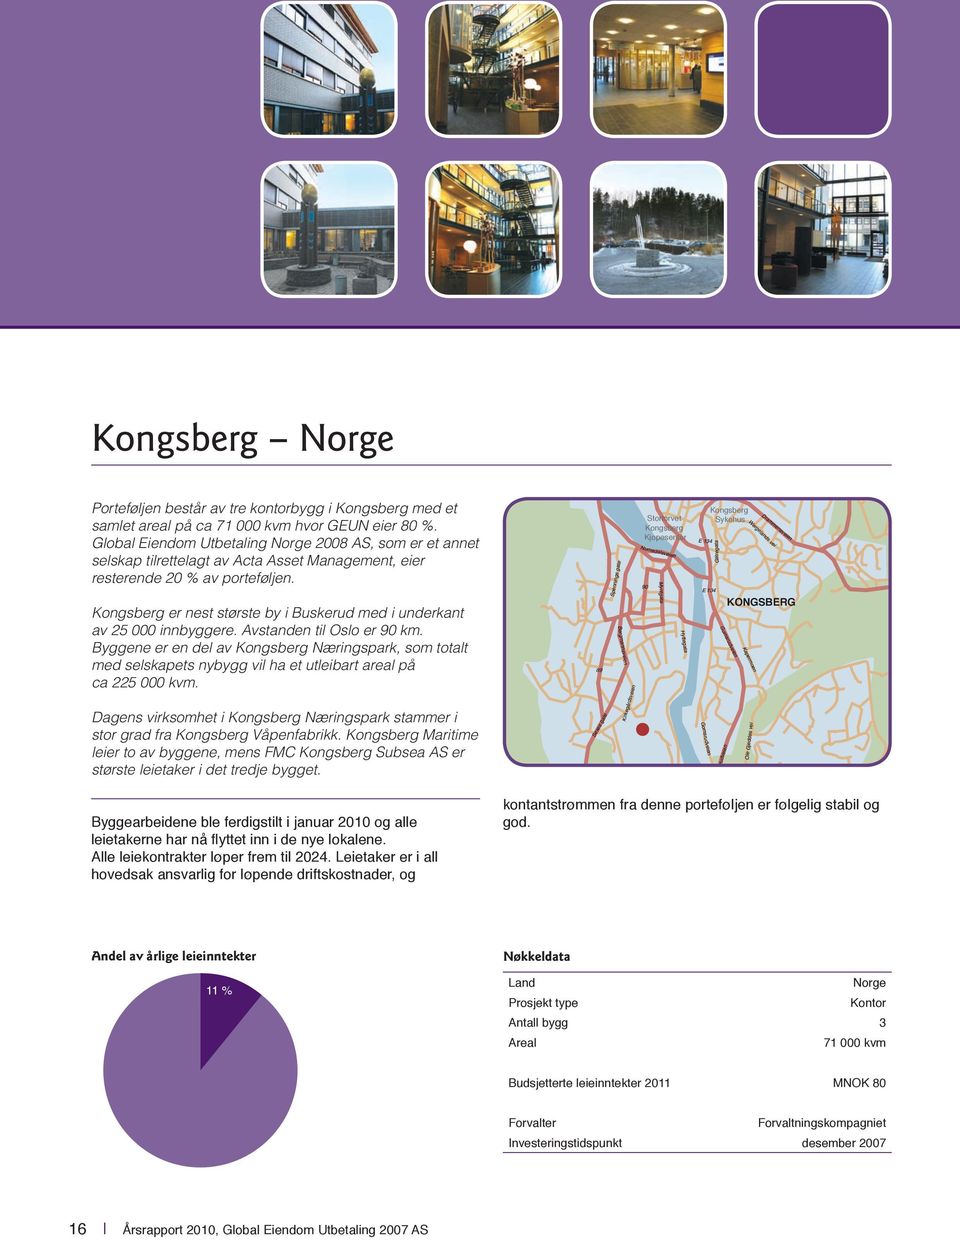 Kongsberg er nest største by i Buskerud med i underkant av 25 000 innbyggere. Avstanden til Oslo er 90 km.